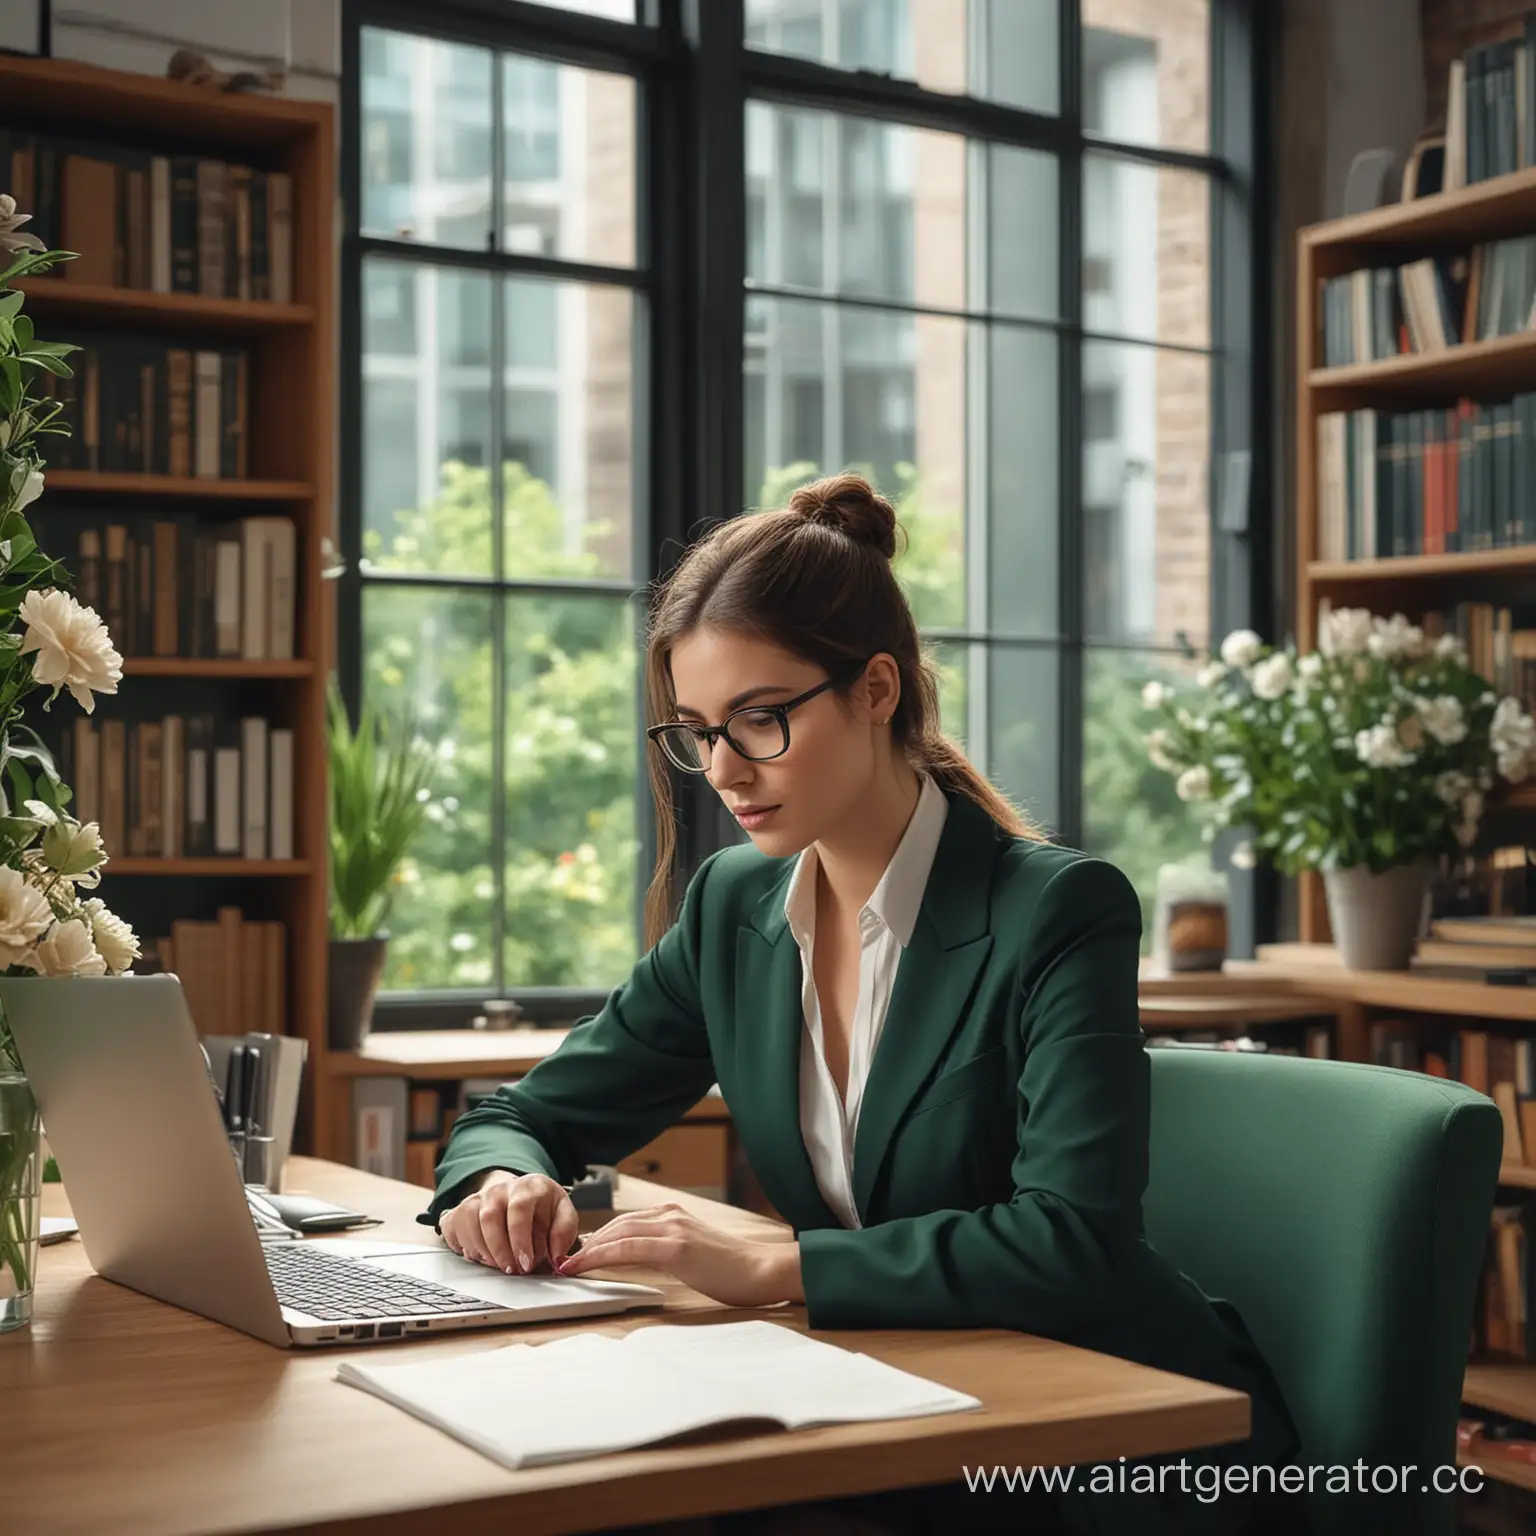 красивая и деловая девушка юрист печатает на ноутбуке. Девушка сидит в офисе. На заднем плане большое красивое окно и полки с книгами и цветами. Должны использоваться цвета: темно-зеленый, коричневый, серый и черный